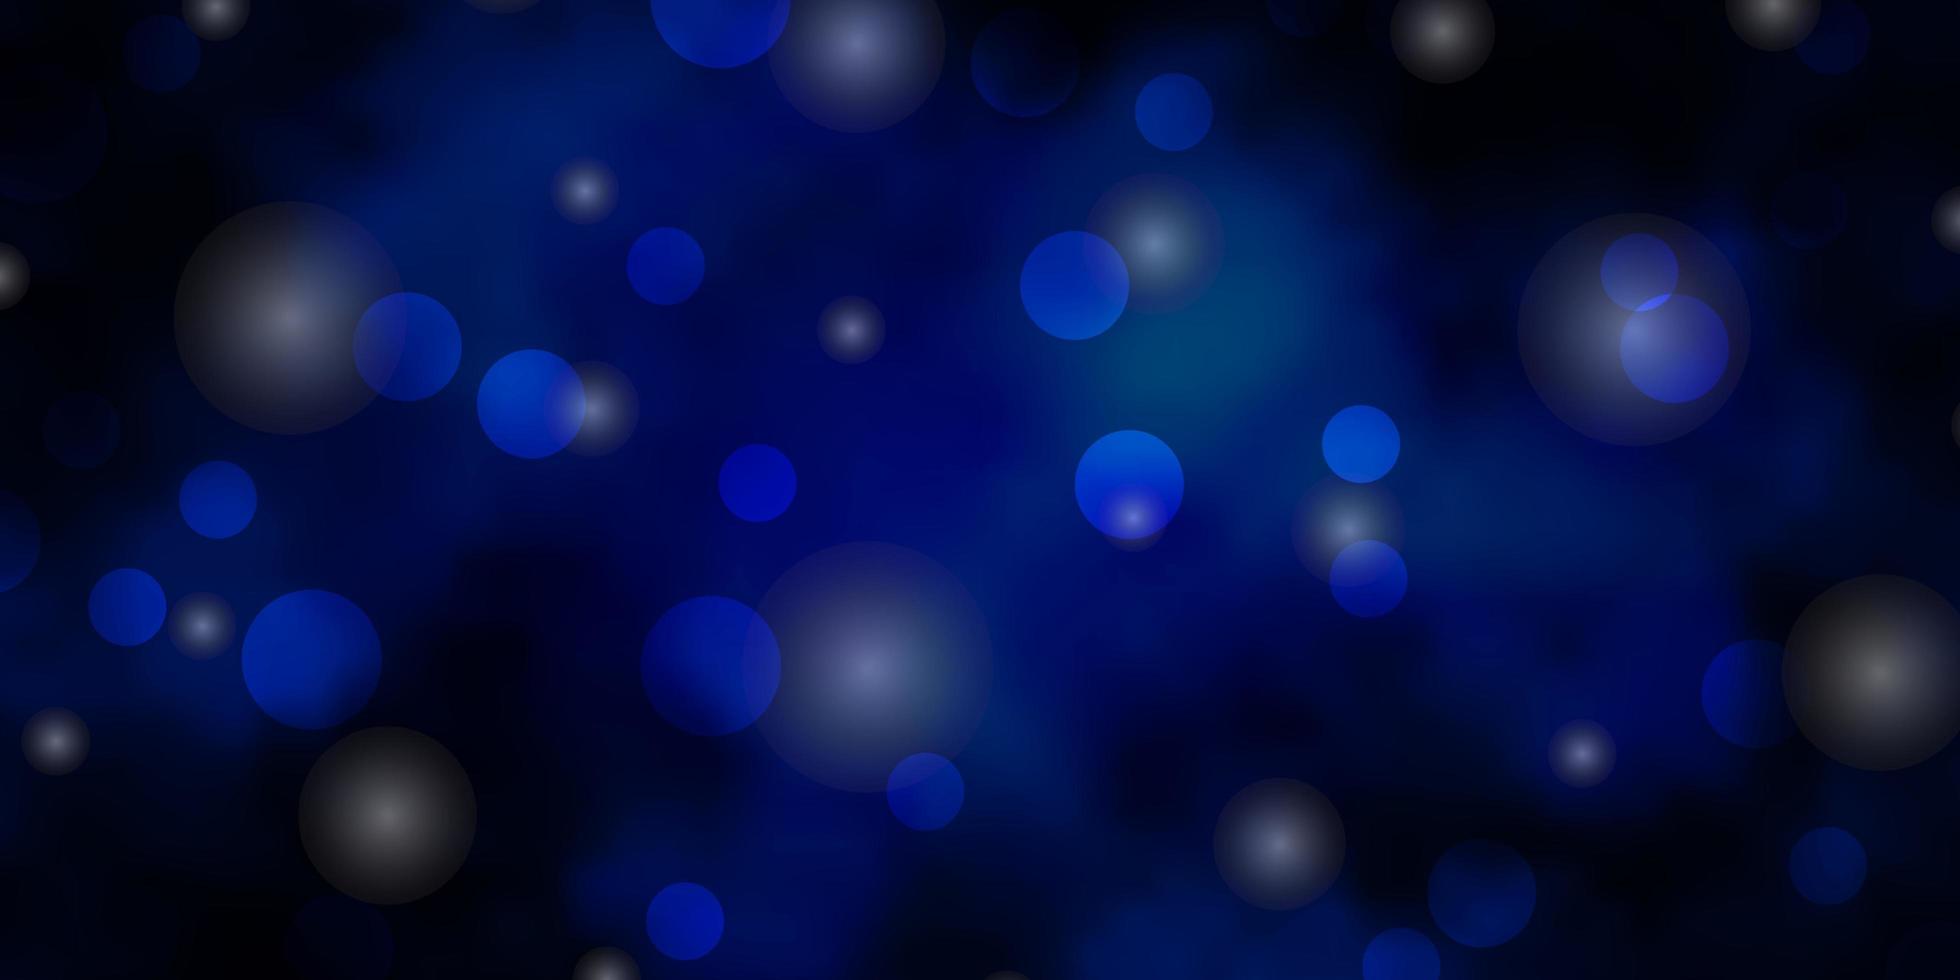 textura de vector azul oscuro con círculos, estrellas. diseño abstracto en estilo degradado con burbujas, estrellas. patrón para folletos, folletos.